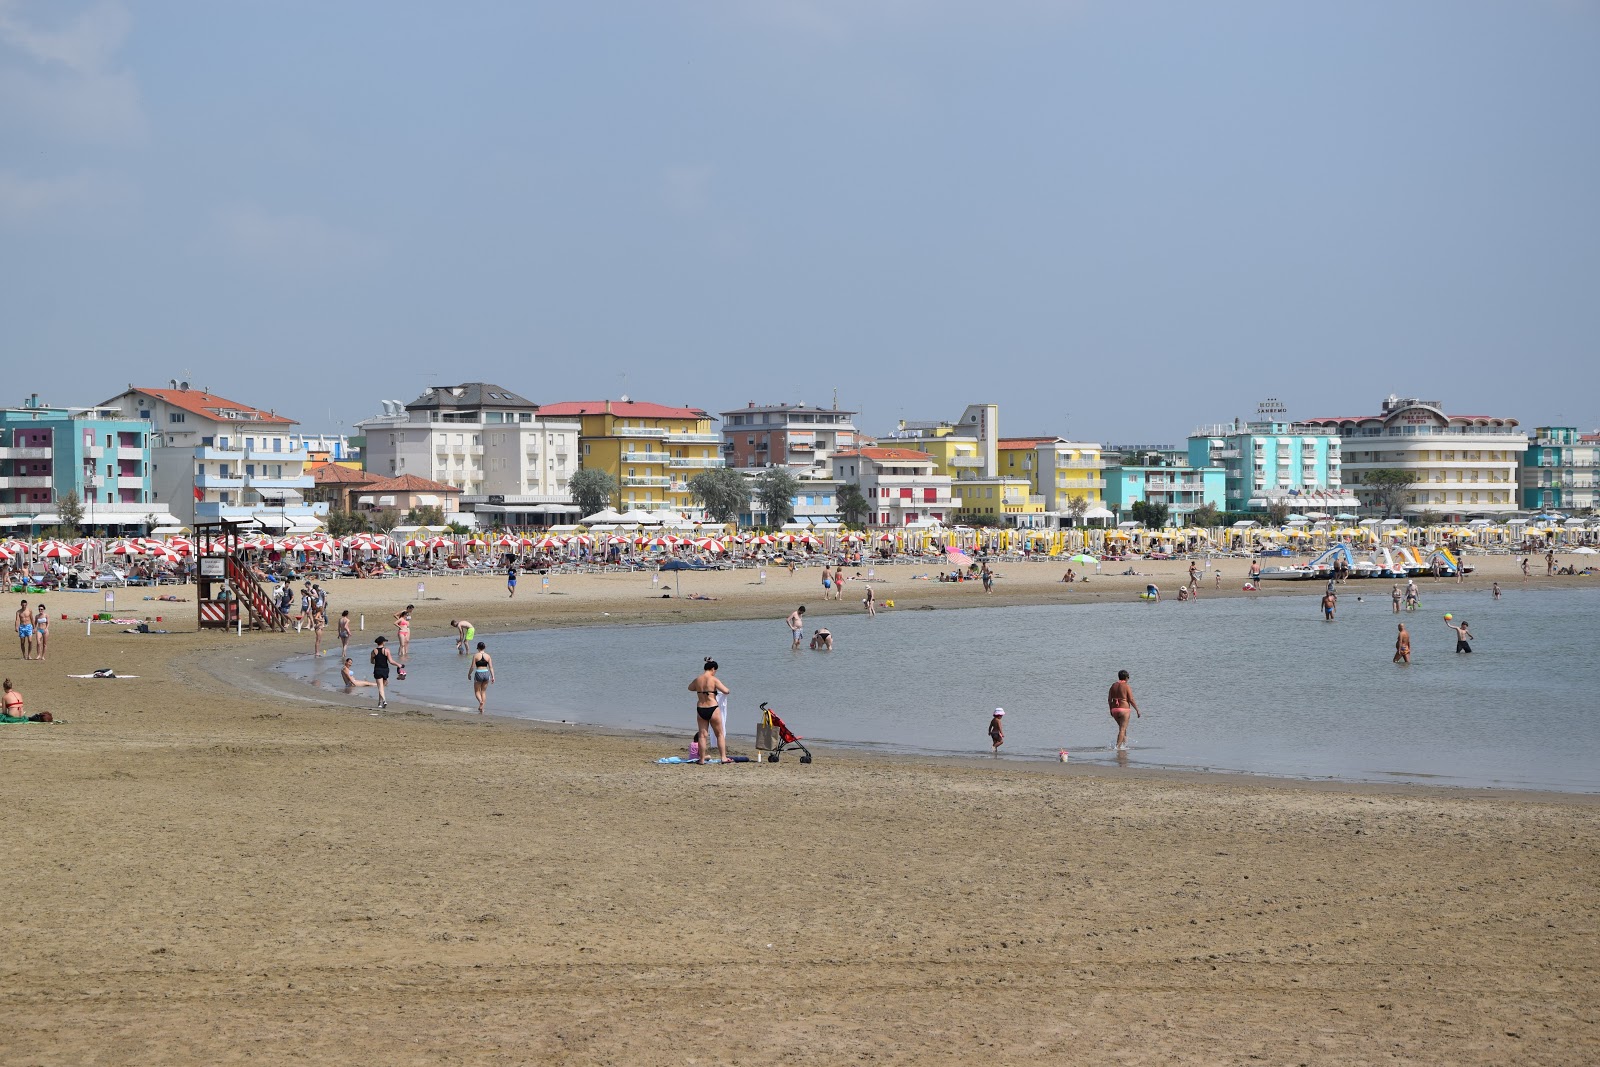 Foto de Spiaggia di Levante - recomendado para viajantes em família com crianças